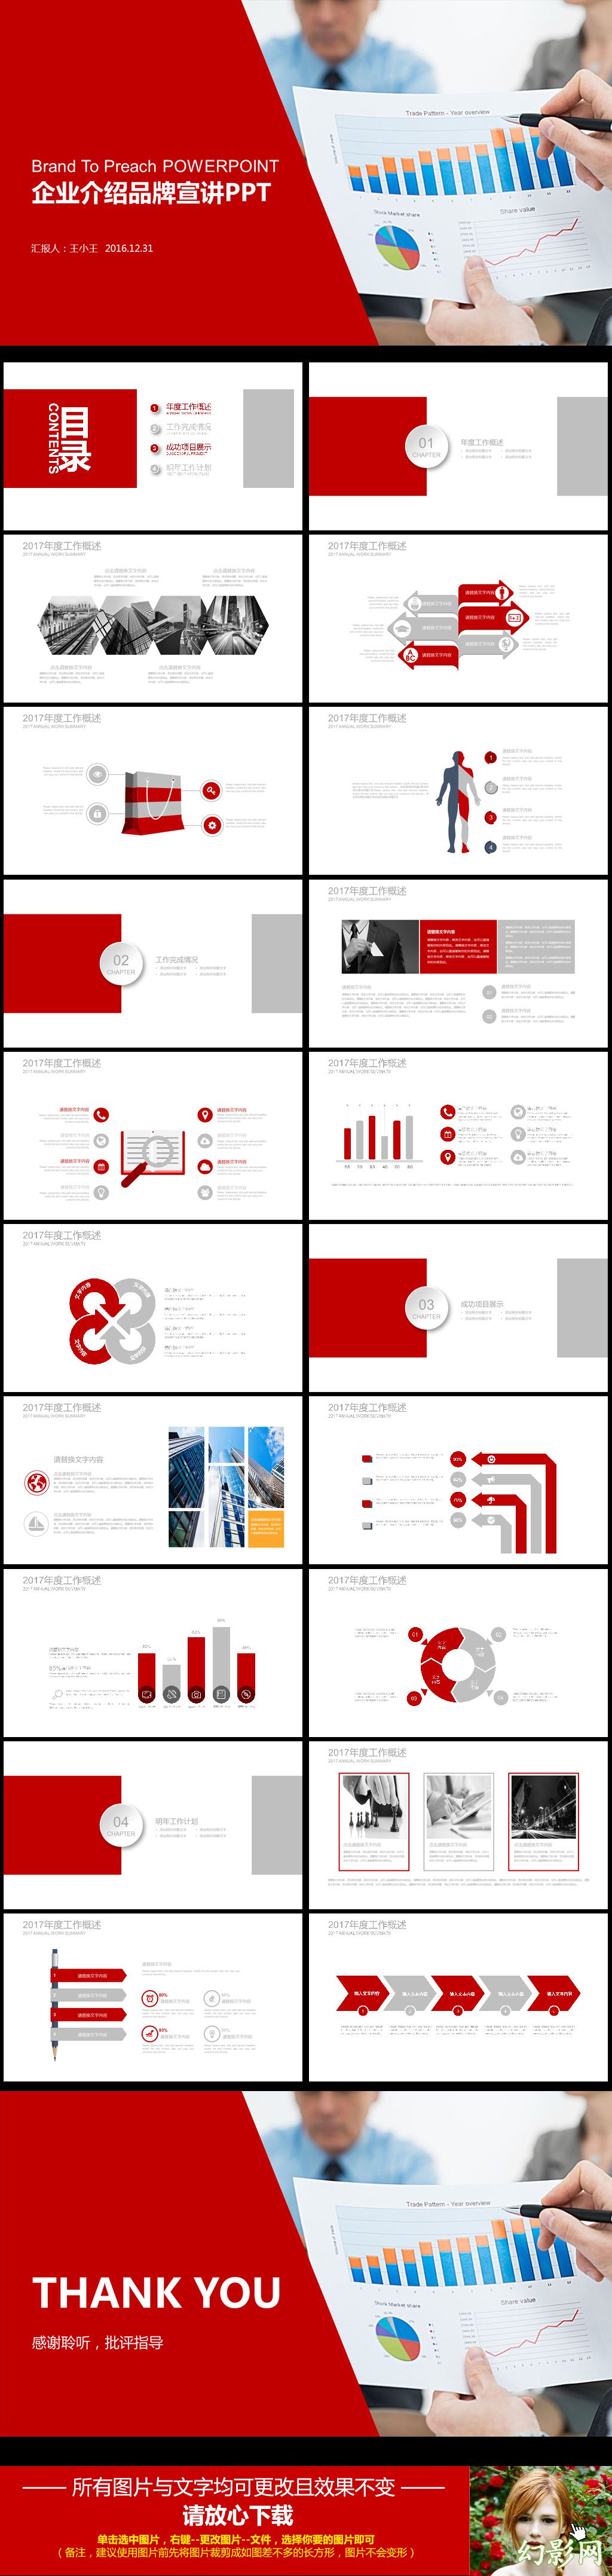 红灰系列创意图形品牌宣讲企业介绍